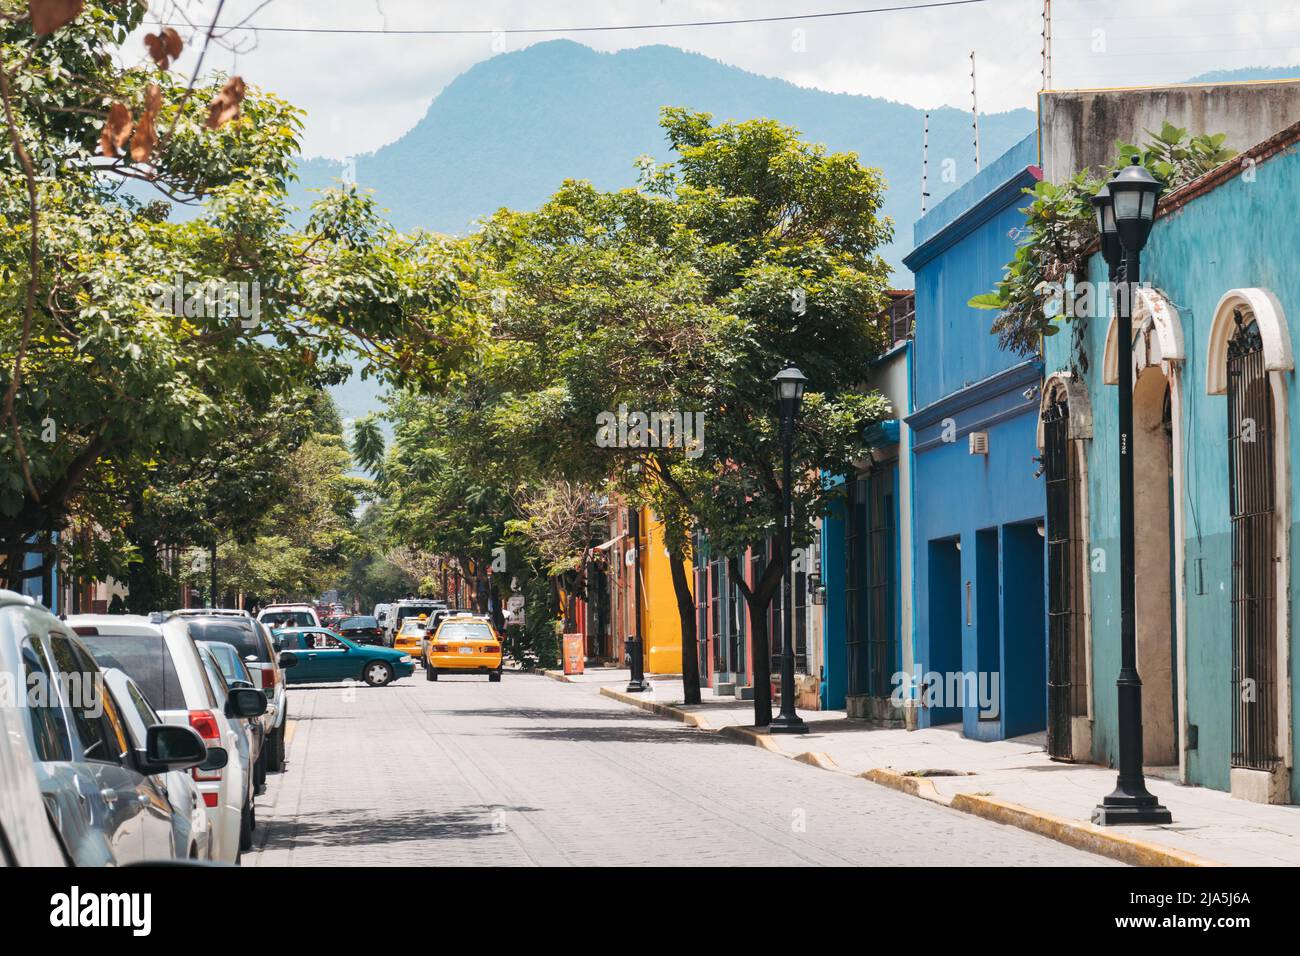 Les rues colorées et lumineuses de la ville d'Oaxaca, une ville coloniale espagnole qui sert maintenant de capitale de l'État d'Oaxaca, au Mexique Banque D'Images